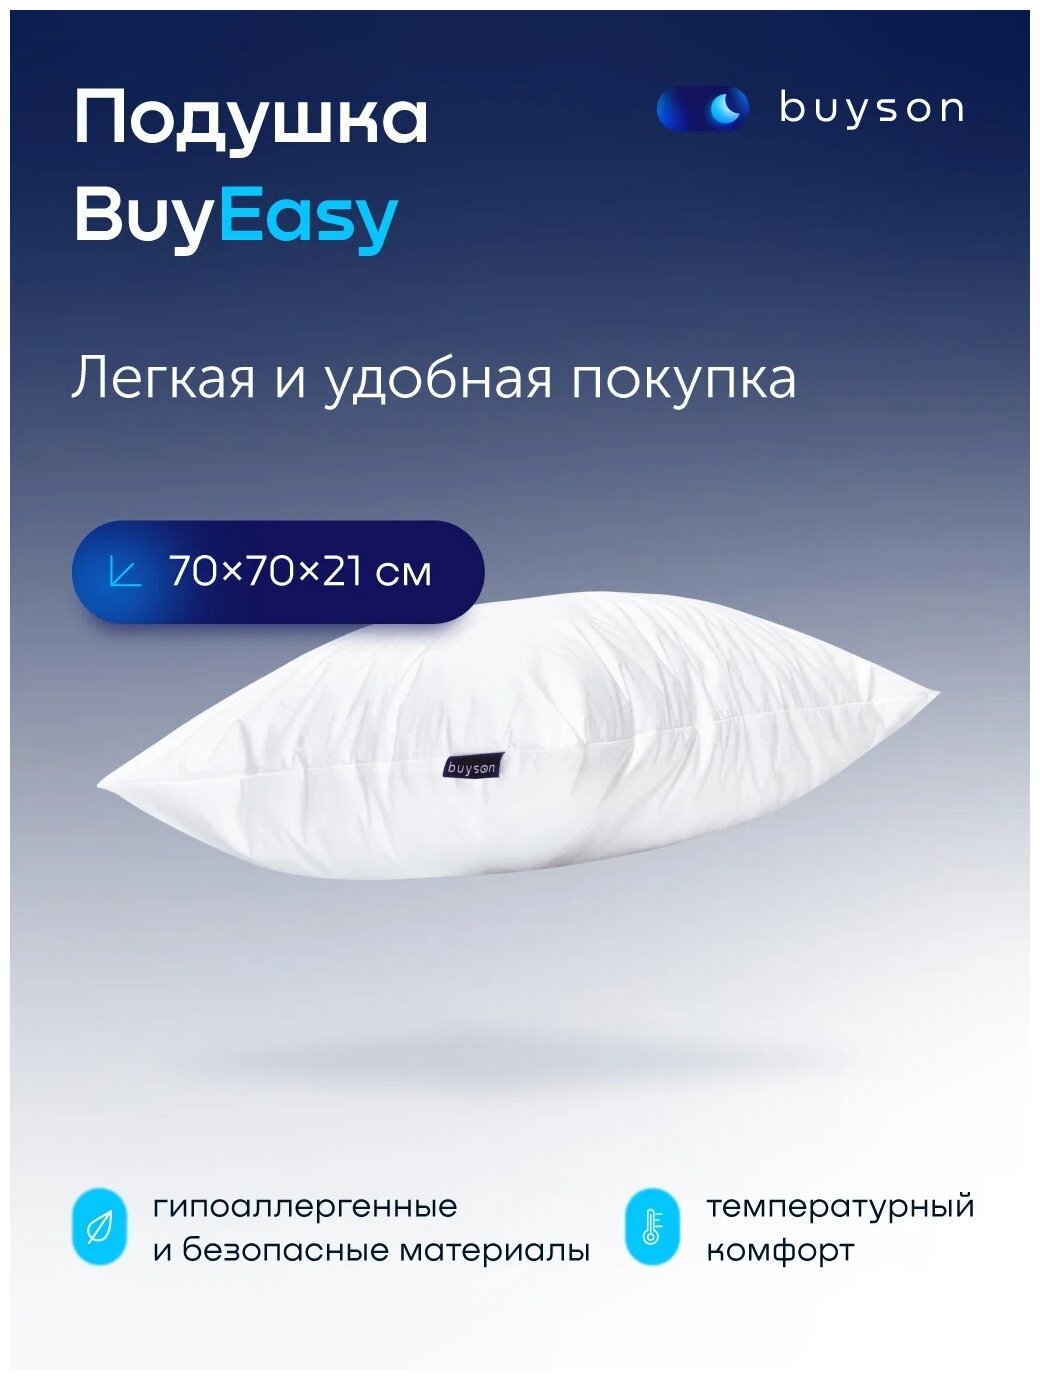 Анатомическая набивная подушка 70x70см, buyson BuyEasy, высота 21 см - фотография № 1